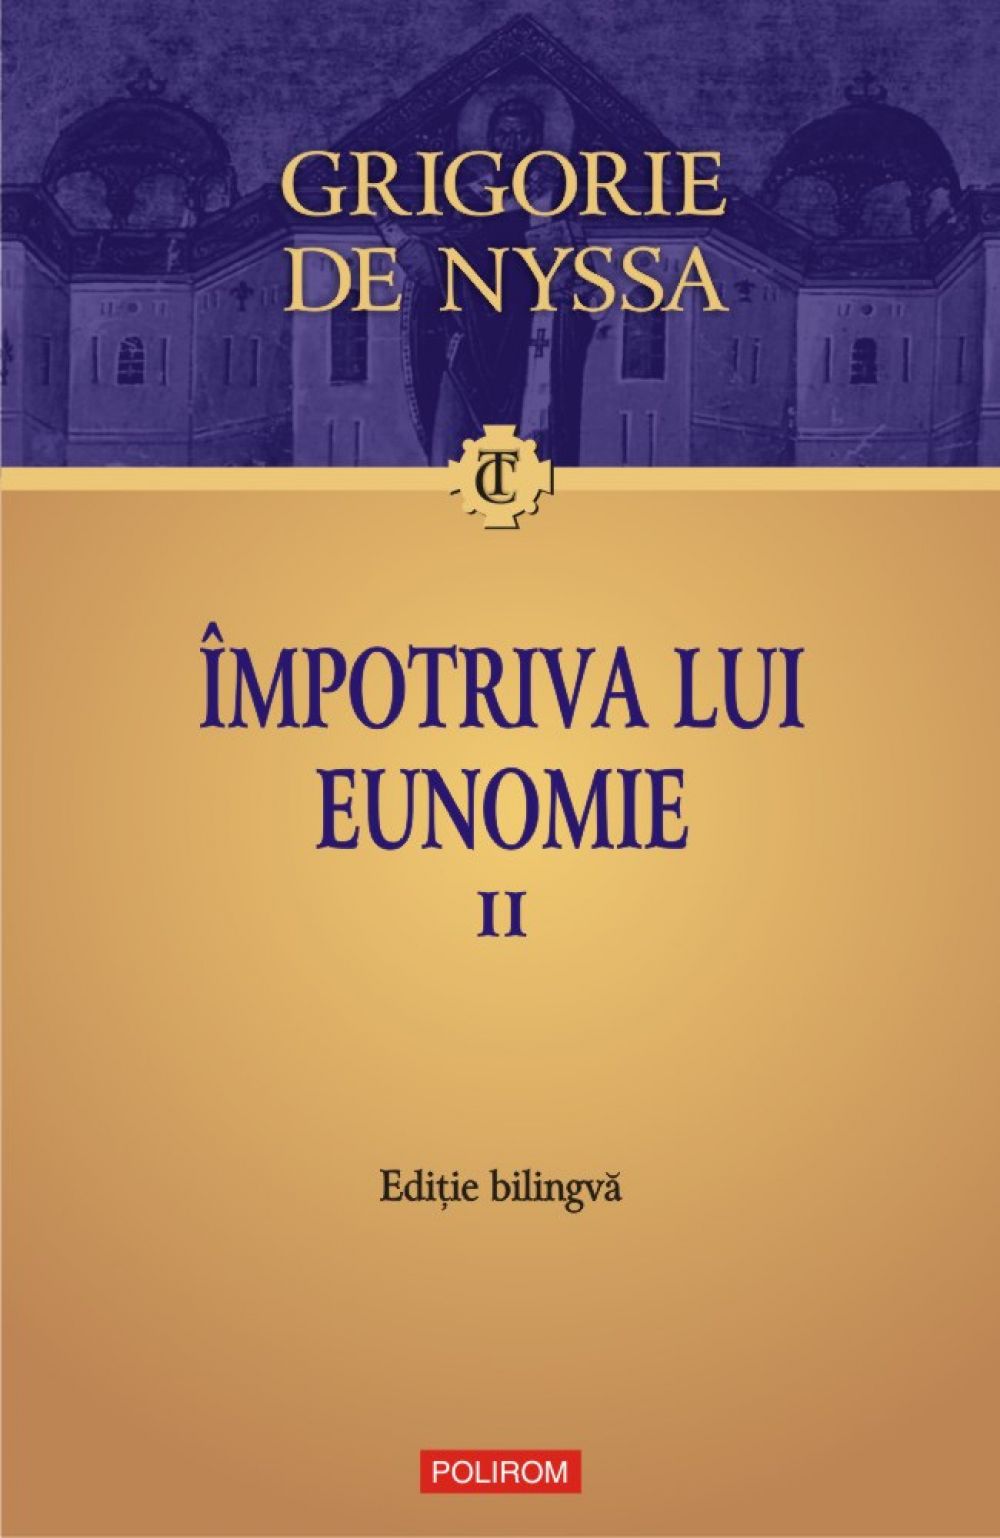 Impotriva lui Eunomie Vol. II, Grigorie de Nyssa